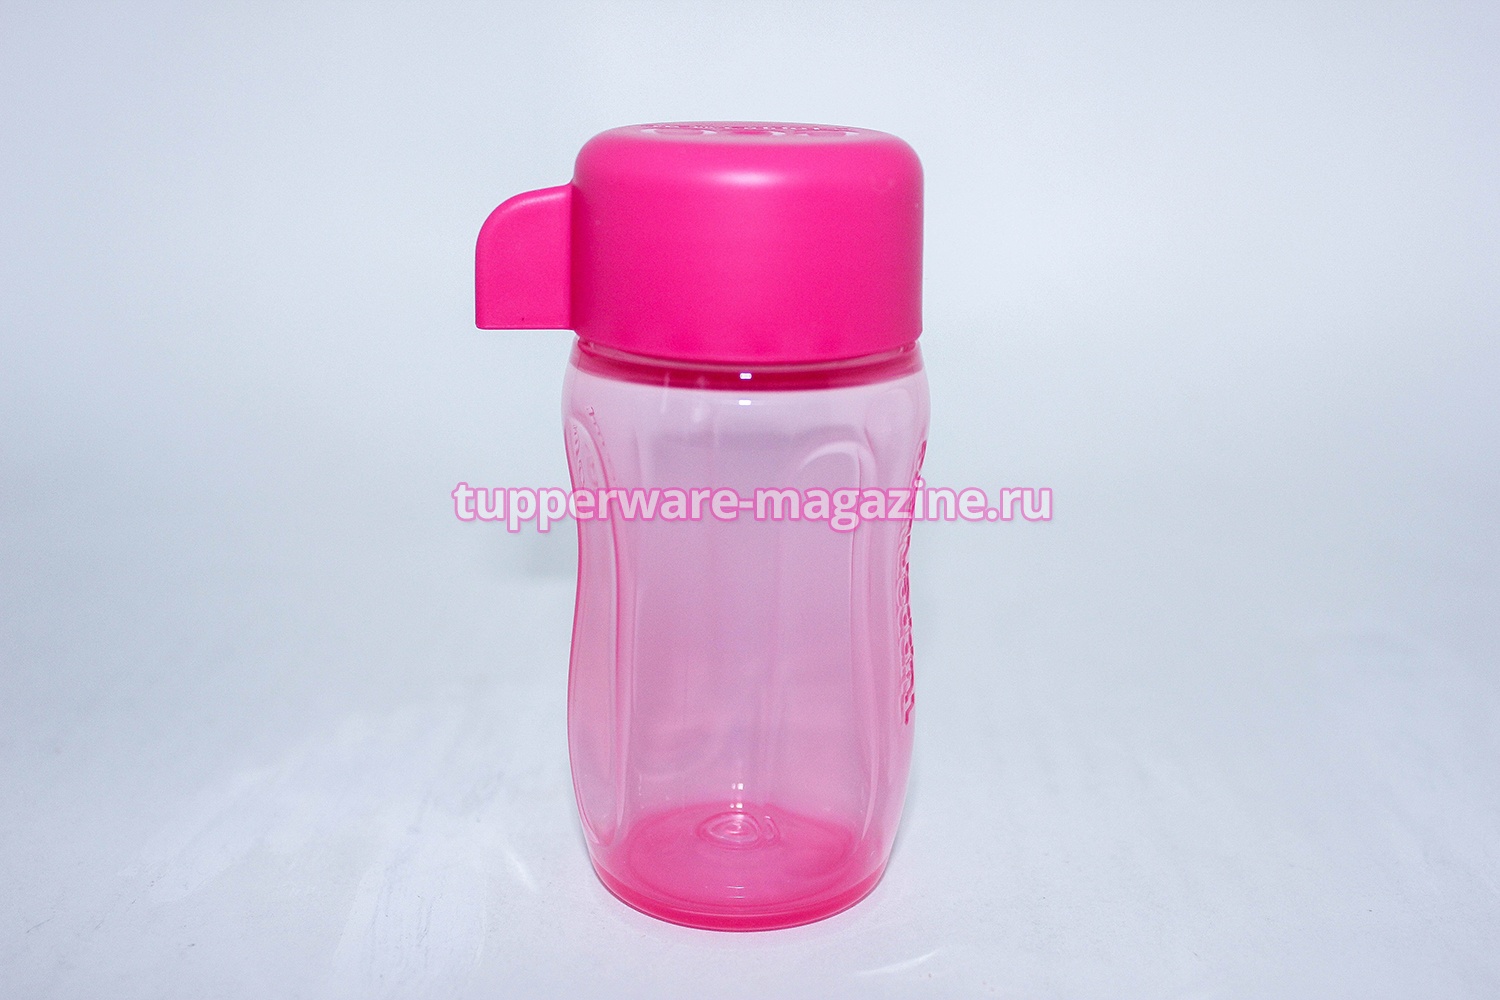 Эко-бутылка мини 90 мл без клапана в ярко-розовом цвете